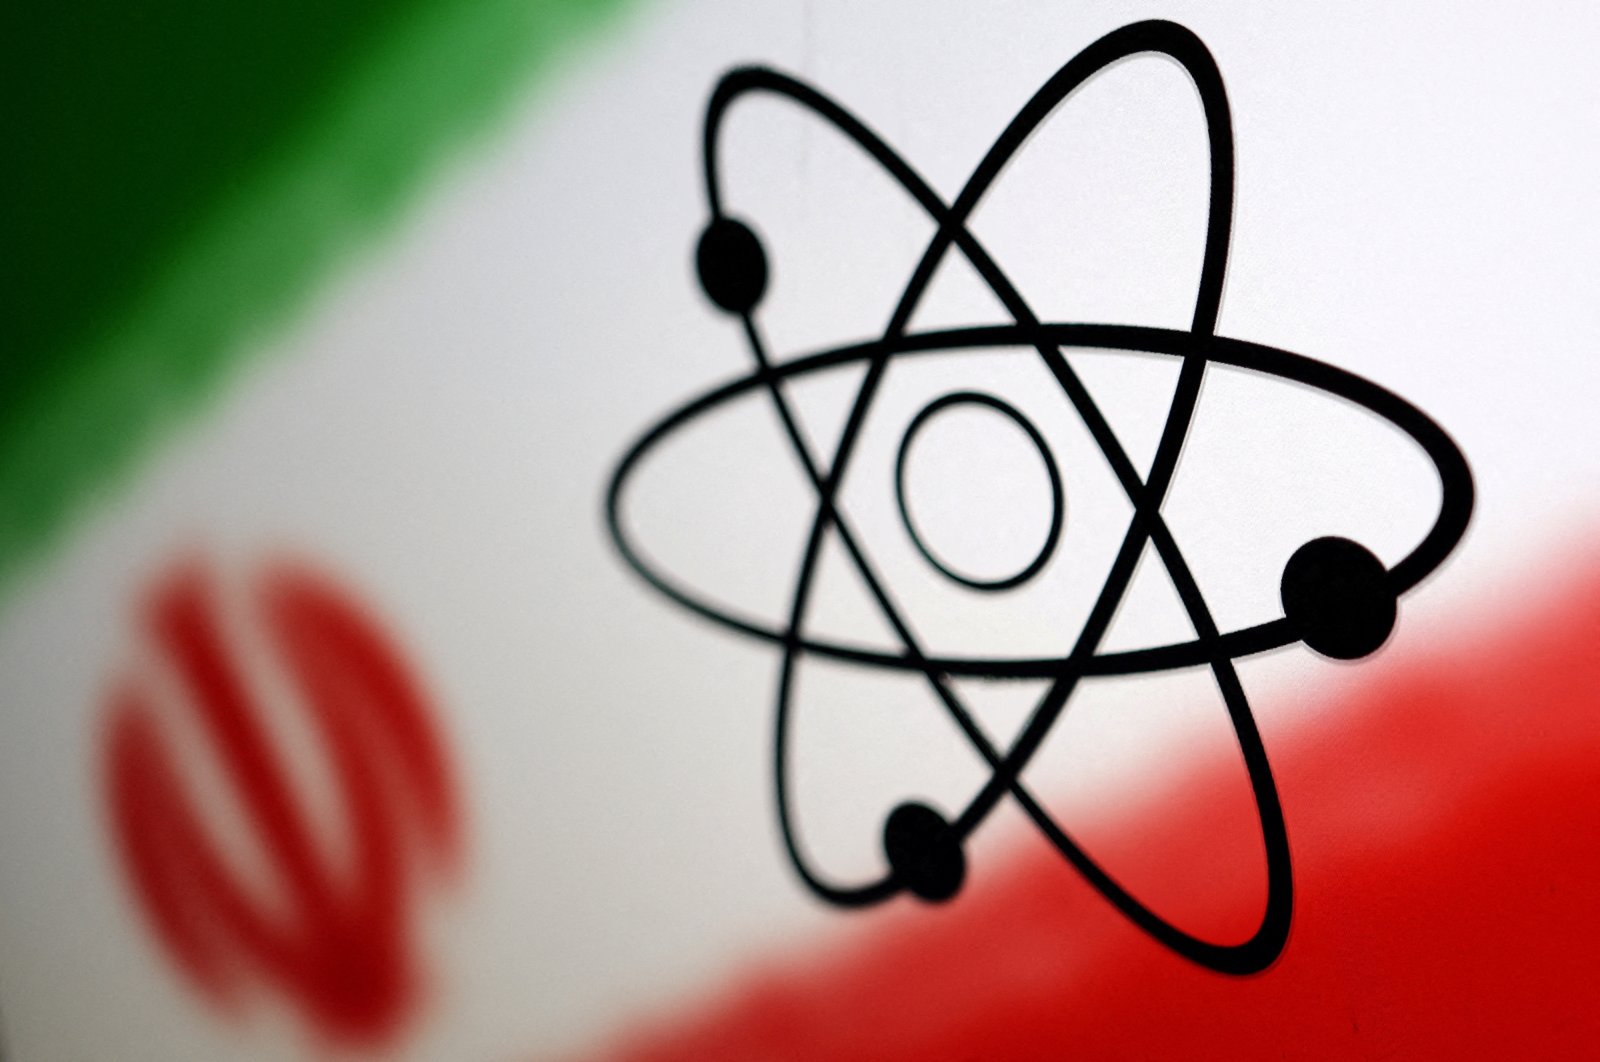 Iran dapat memproduksi bom atom, tidak ada niat untuk melakukannya: kepala nuklir